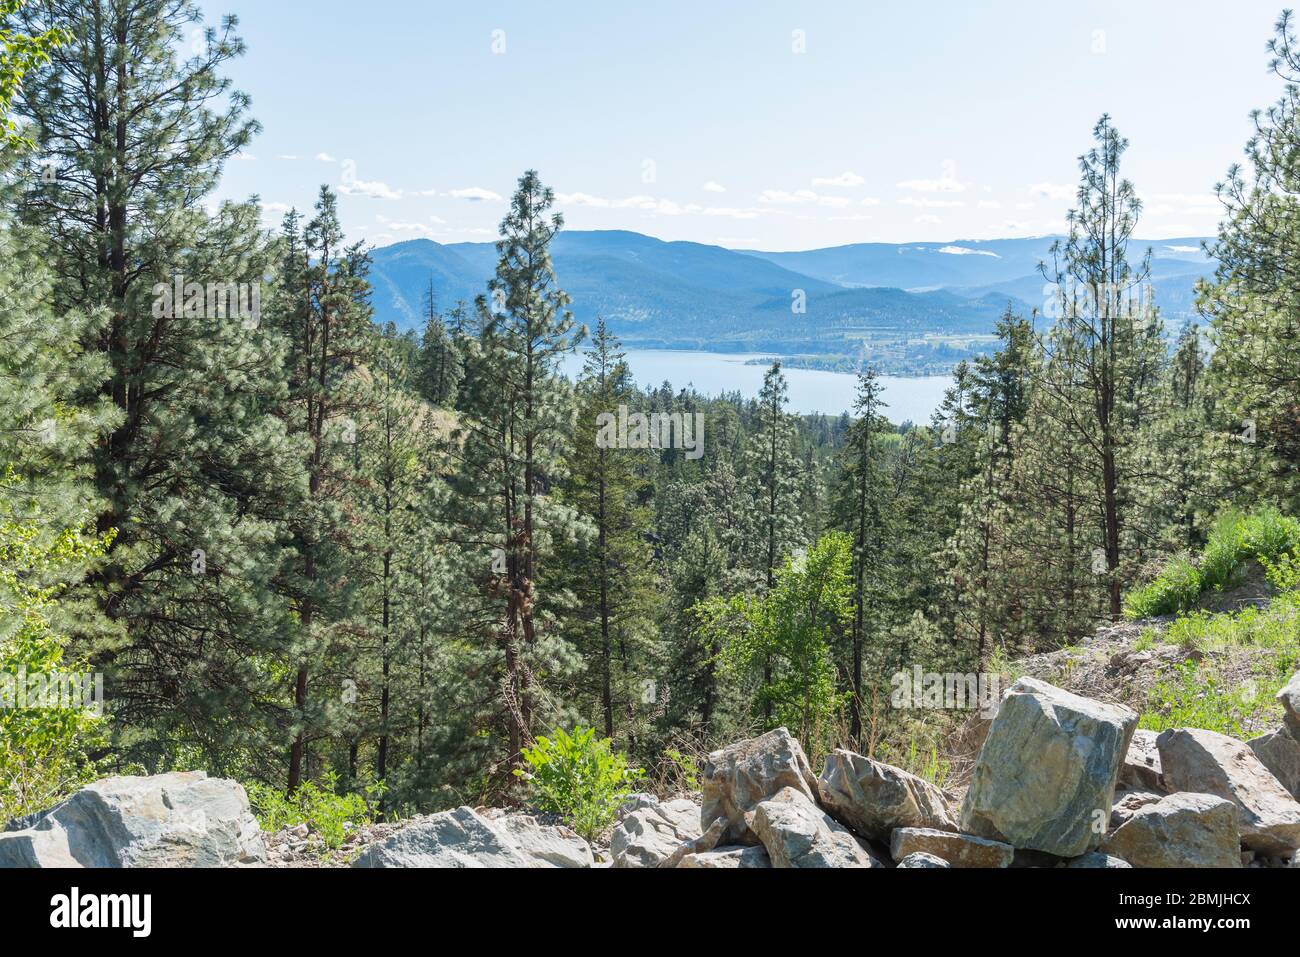 Vista a gran altitud desde el Kettle Valley Rail Trail de bosque de pinos con el lago Okanagan y montañas a distancia Foto de stock